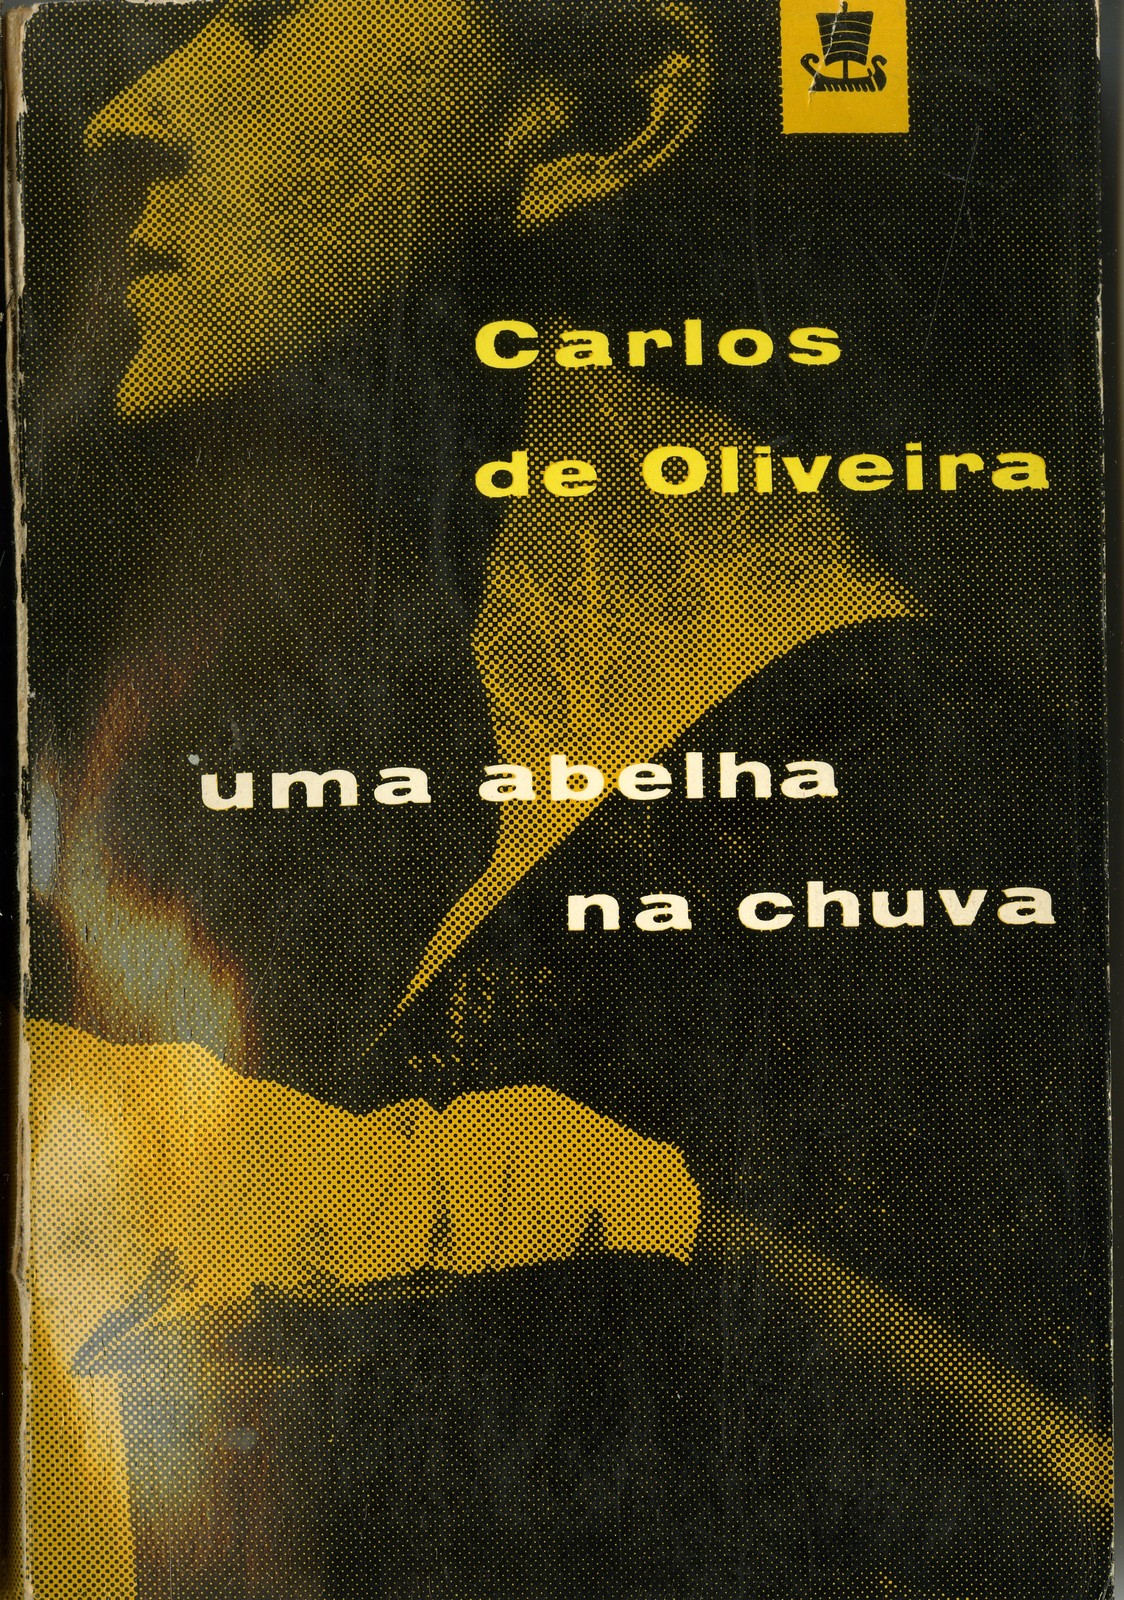 'Uma abelha na chuva', por Carlos de Oliveira; capa de Sebastião Rodrigues, Edição especial, Lisb...